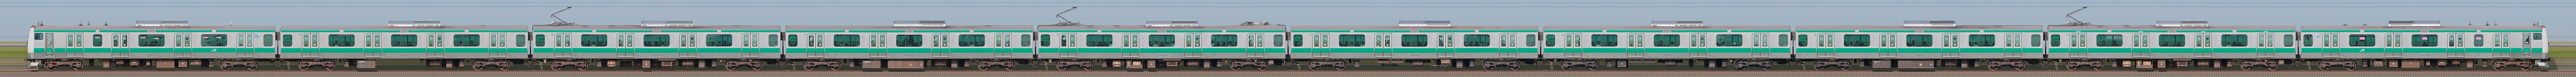 JR東日本 埼京線 E233系7000番台ハエ110編成（海側）の編成サイドビュー